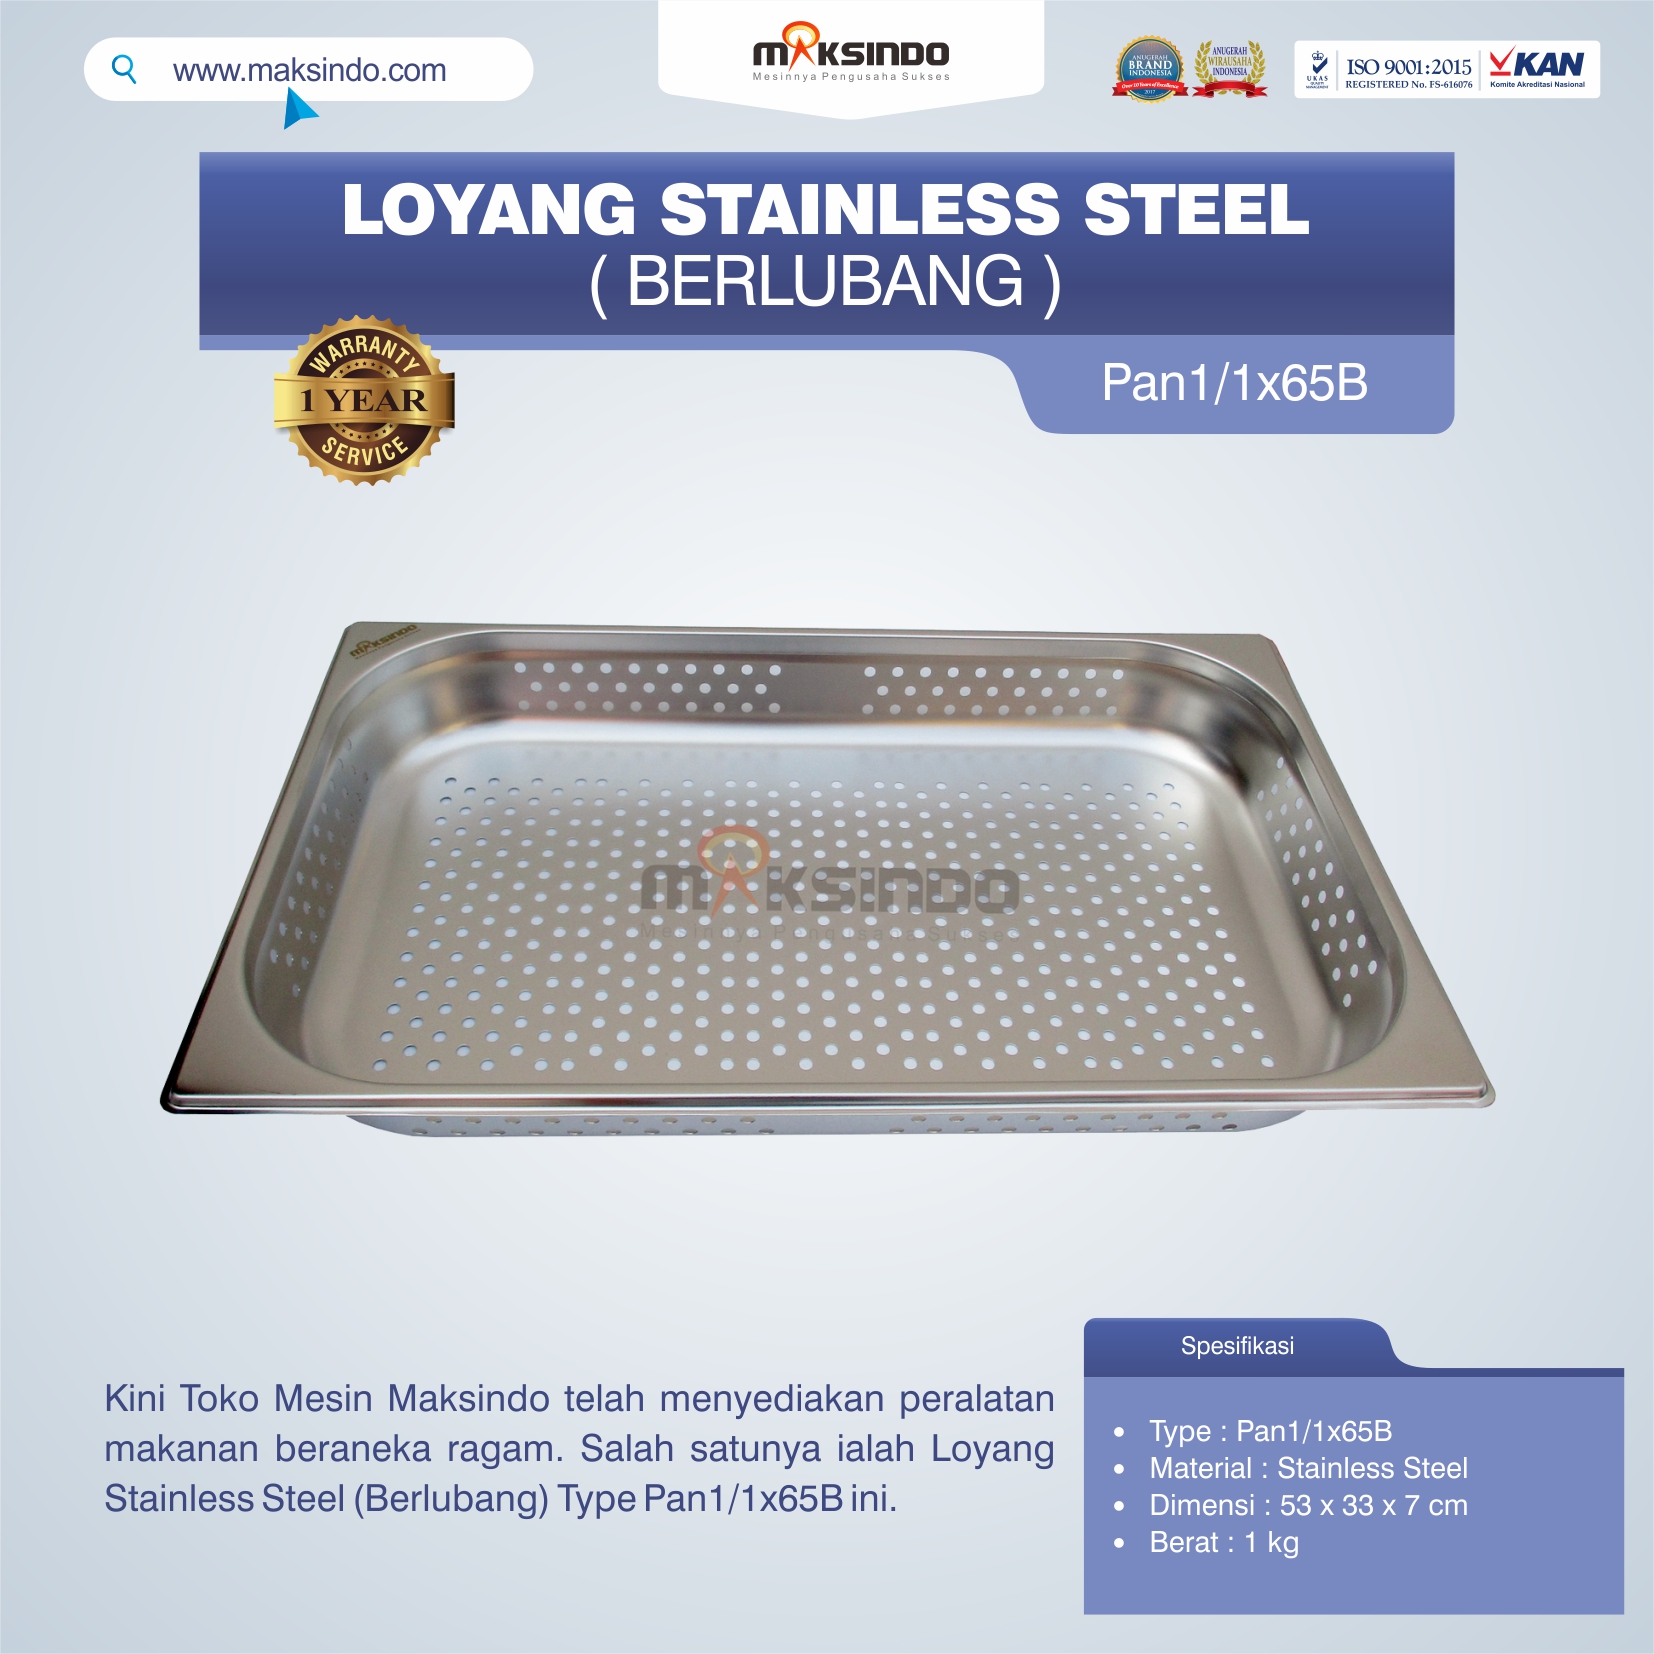 Jual Loyang Stainless Steel (Berlubang) Type Pan1/1x65B di Semarang